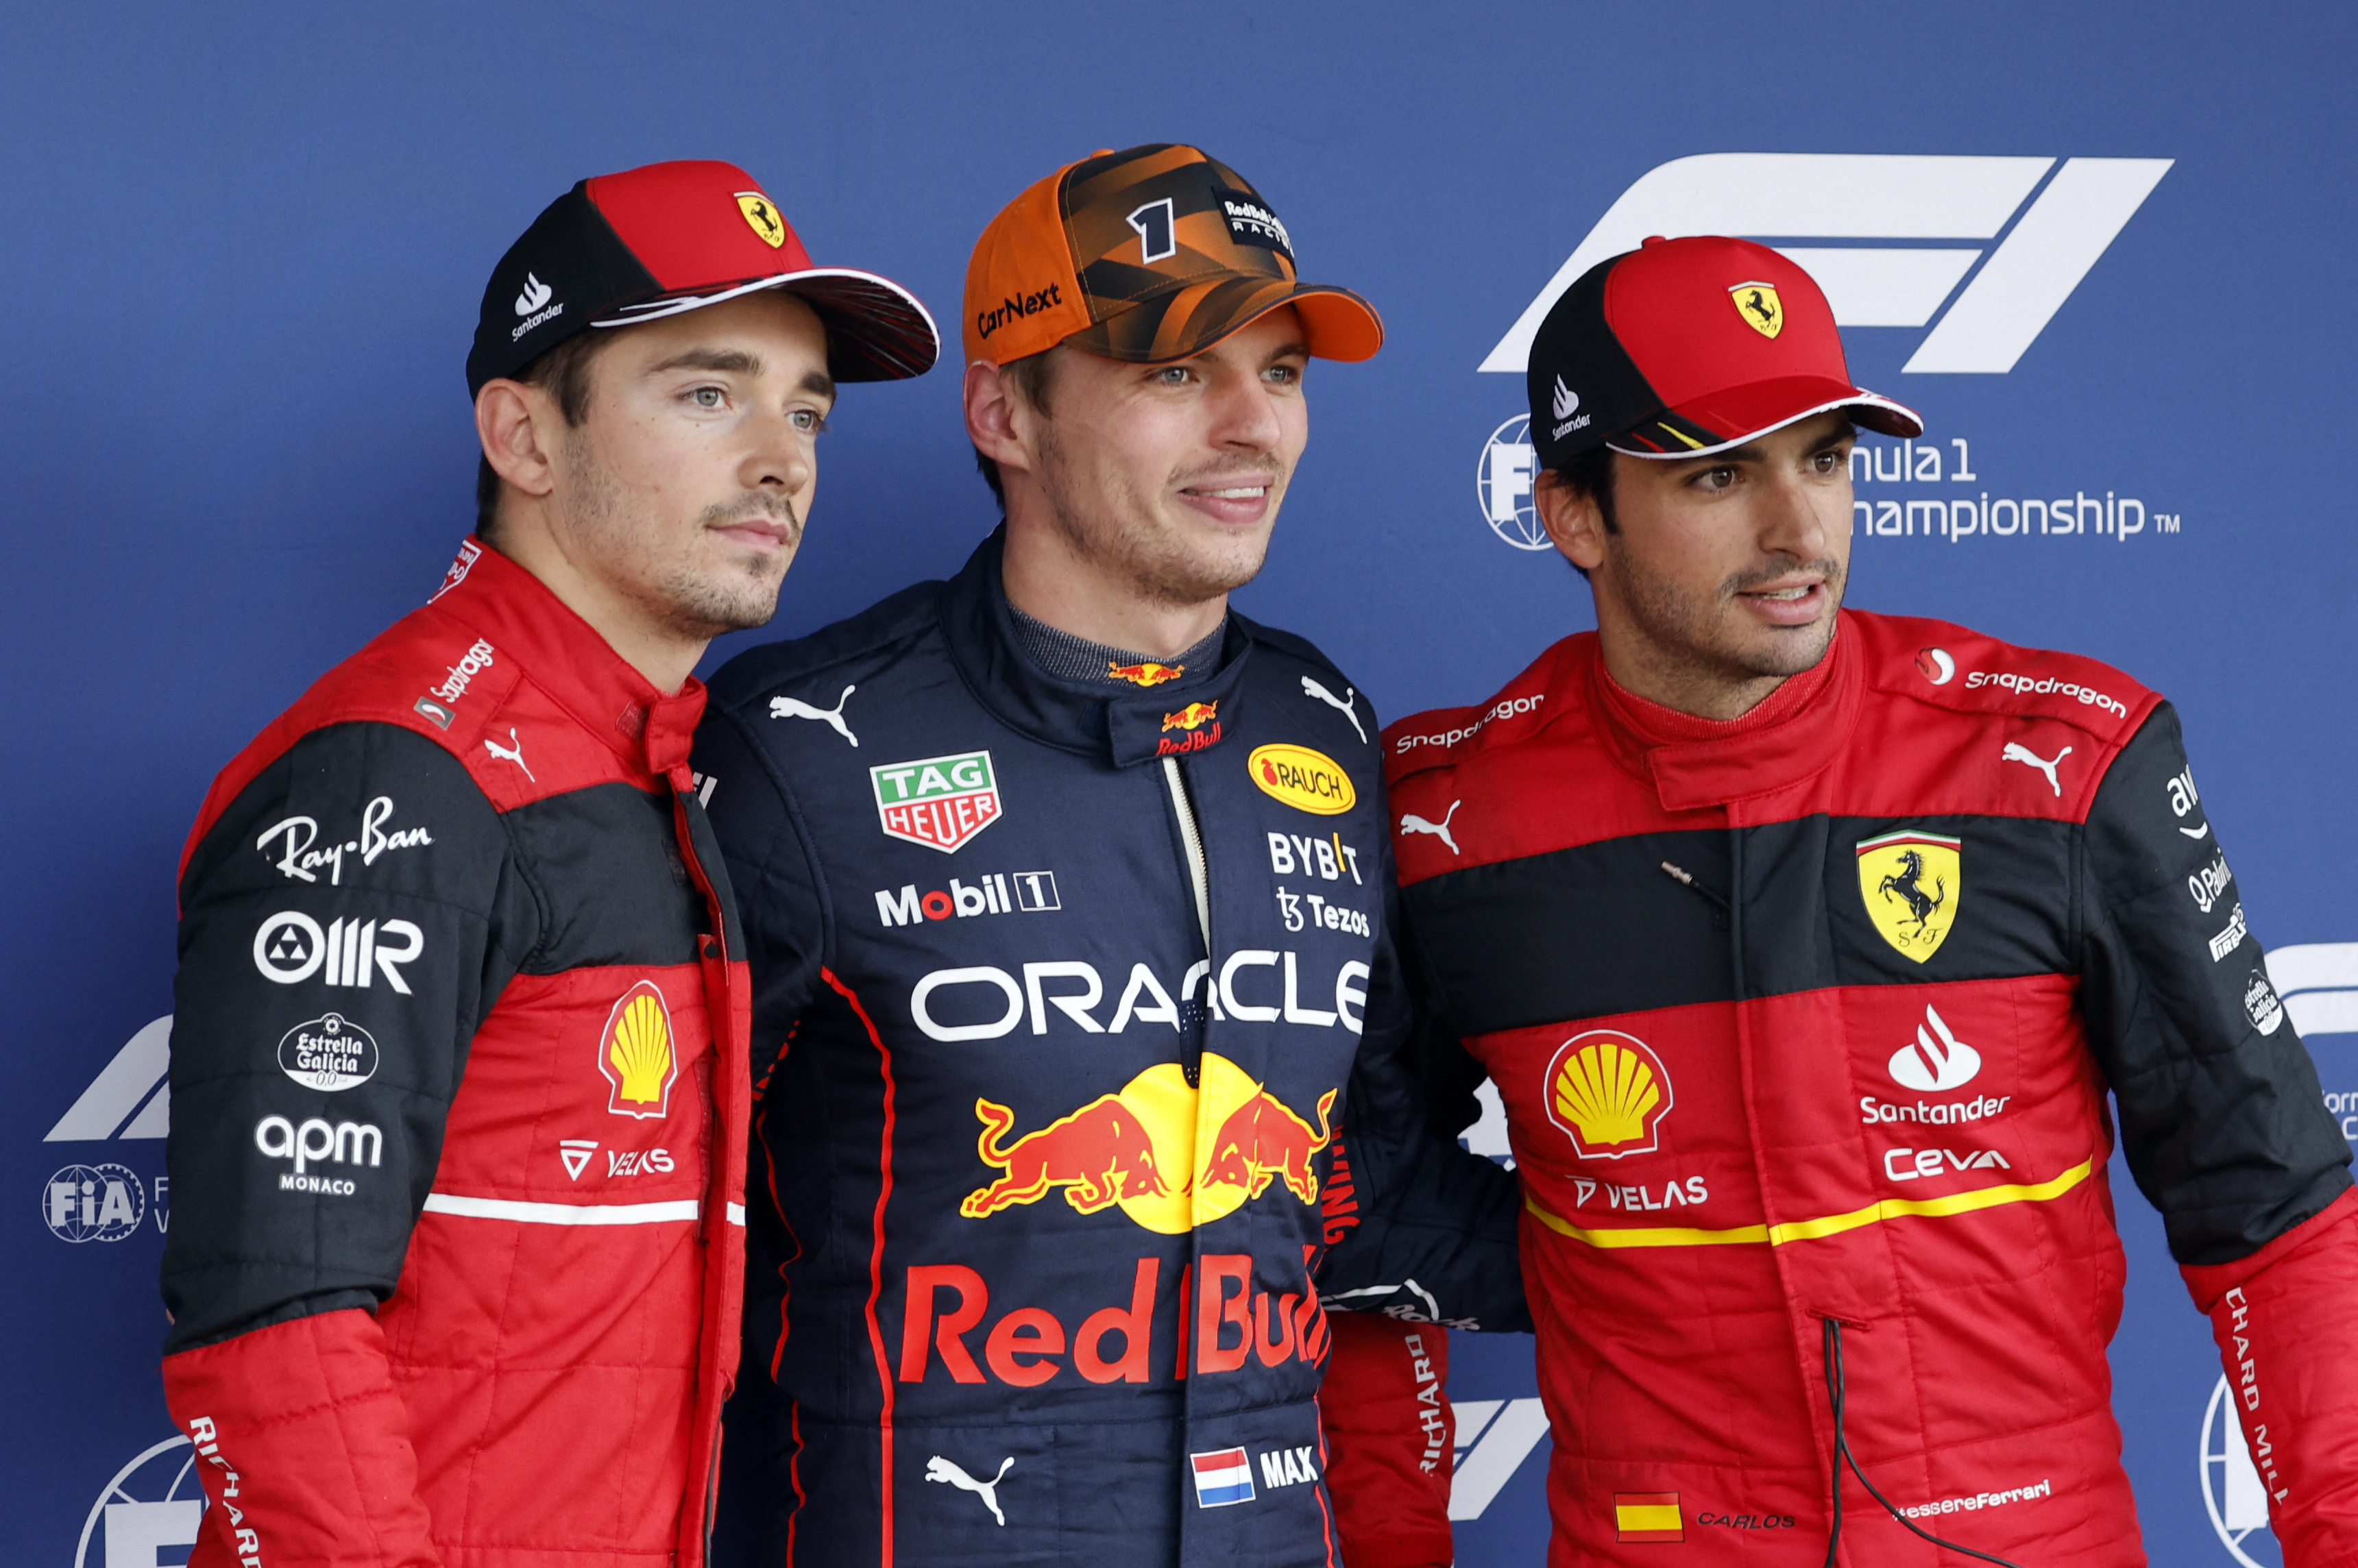 Verstappen achieved pole position ahead of Leclerc and Sainz Jr. (Photo: REUTERS)